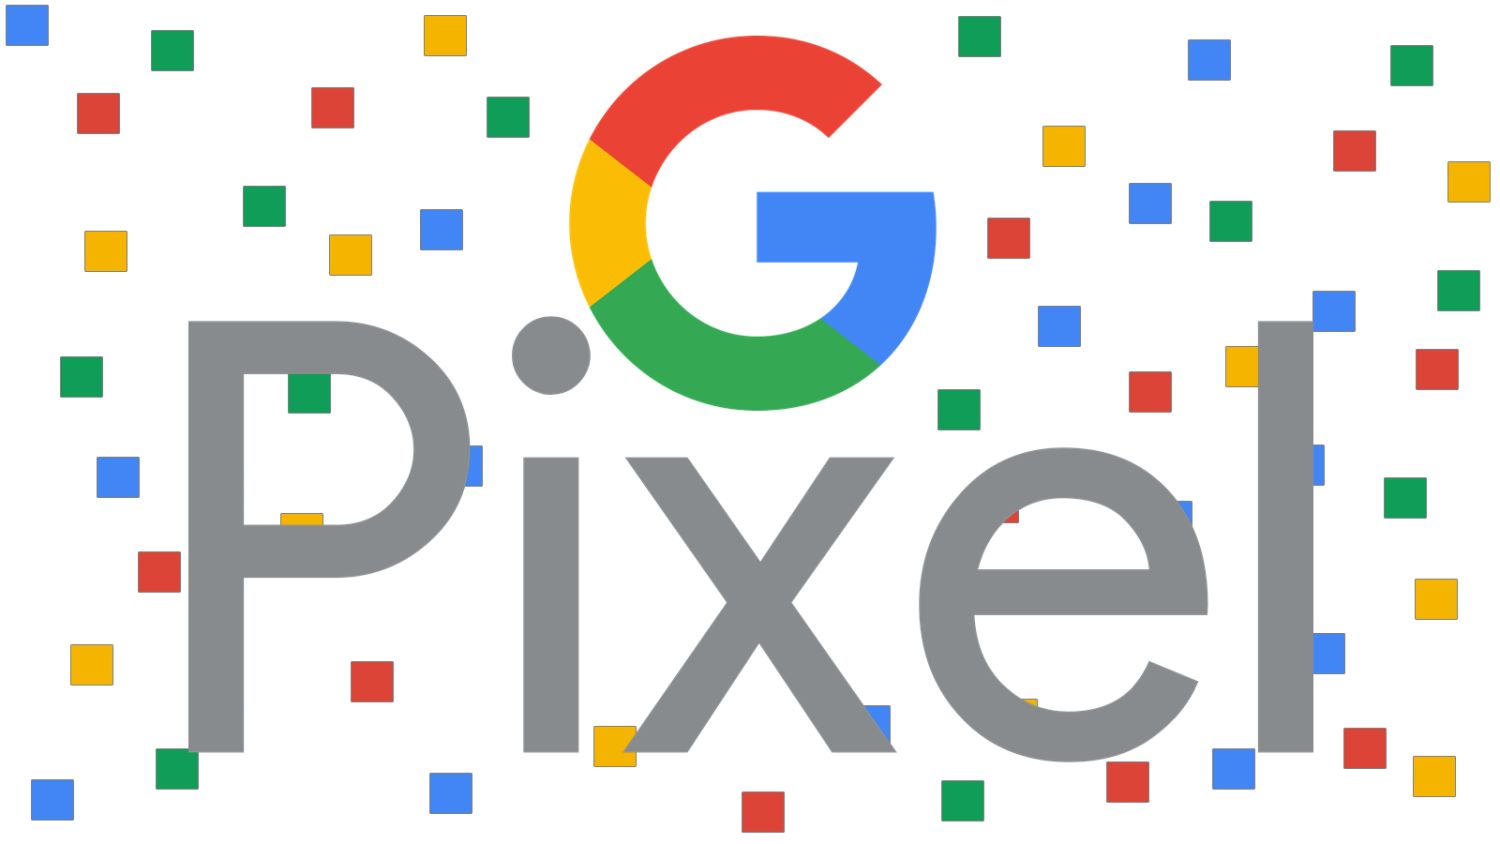 google pixel logo